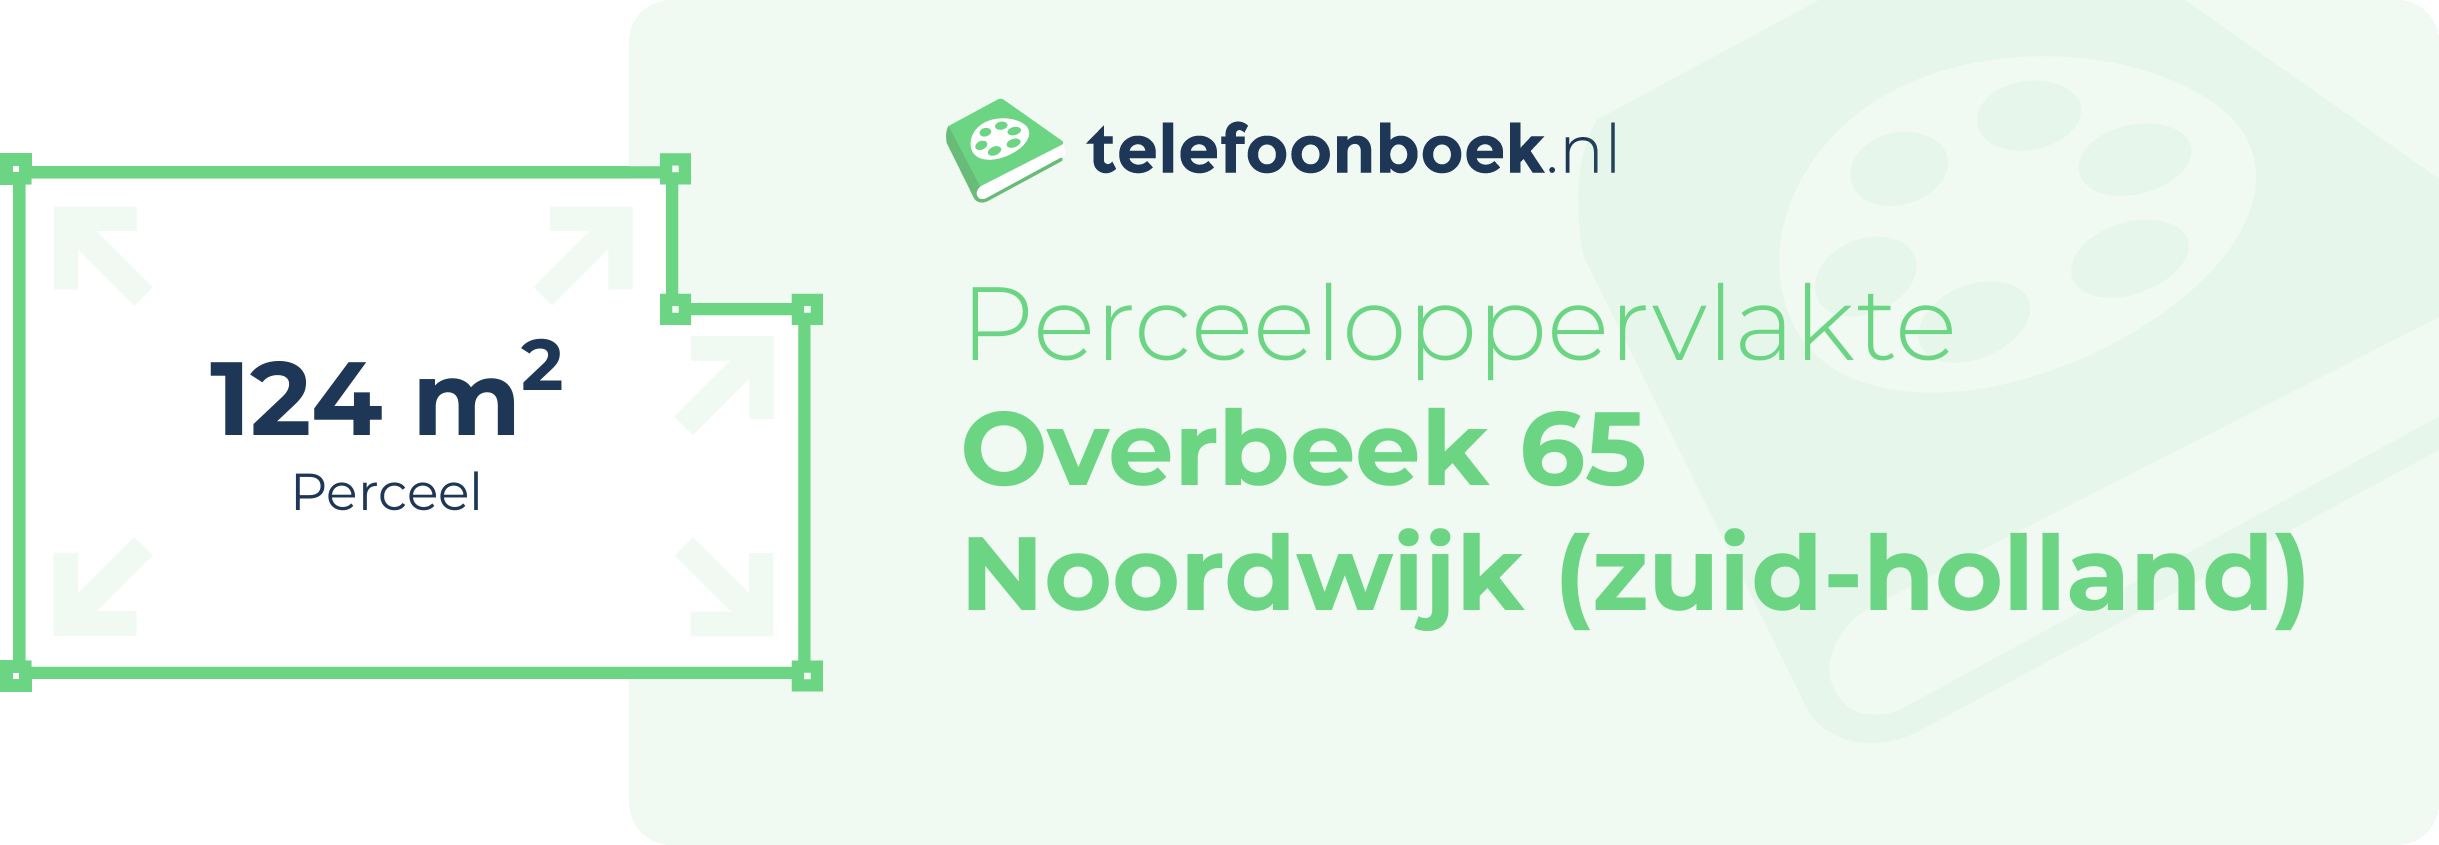 Perceeloppervlakte Overbeek 65 Noordwijk (Zuid-Holland)